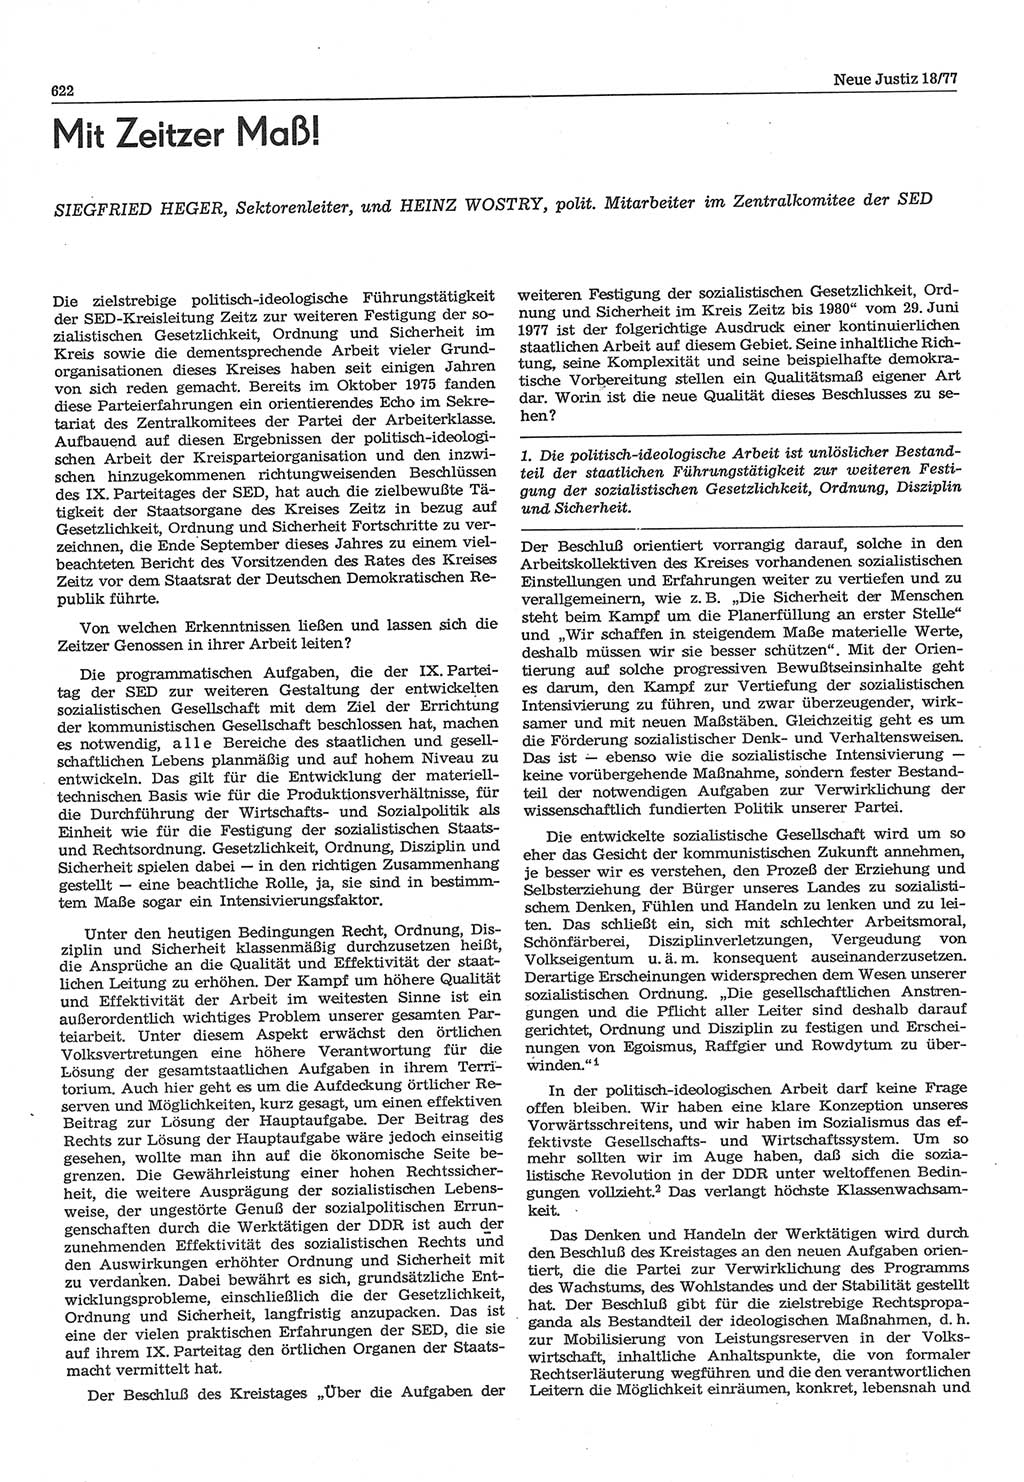 Neue Justiz (NJ), Zeitschrift für Recht und Rechtswissenschaft-Zeitschrift, sozialistisches Recht und Gesetzlichkeit, 31. Jahrgang 1977, Seite 622 (NJ DDR 1977, S. 622)